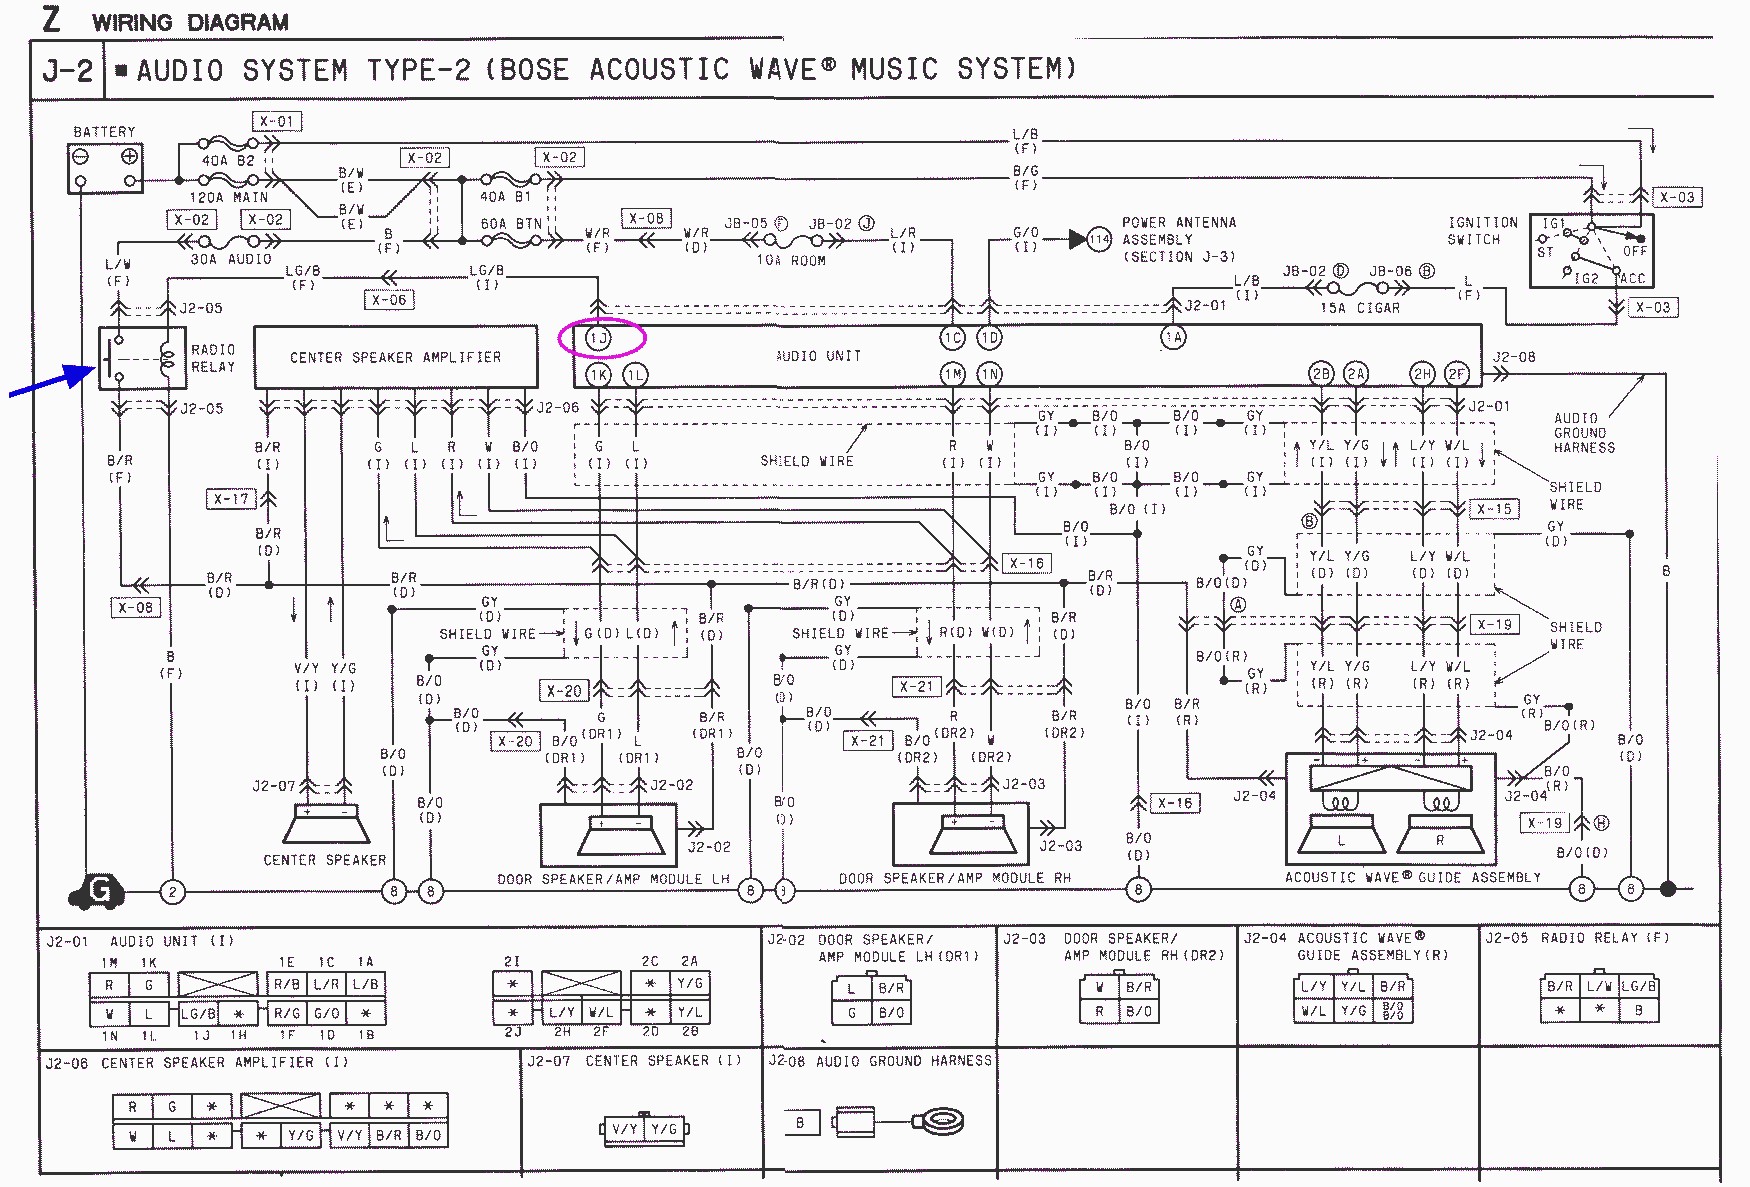 d bose wiring diagram bose wiring diagram2